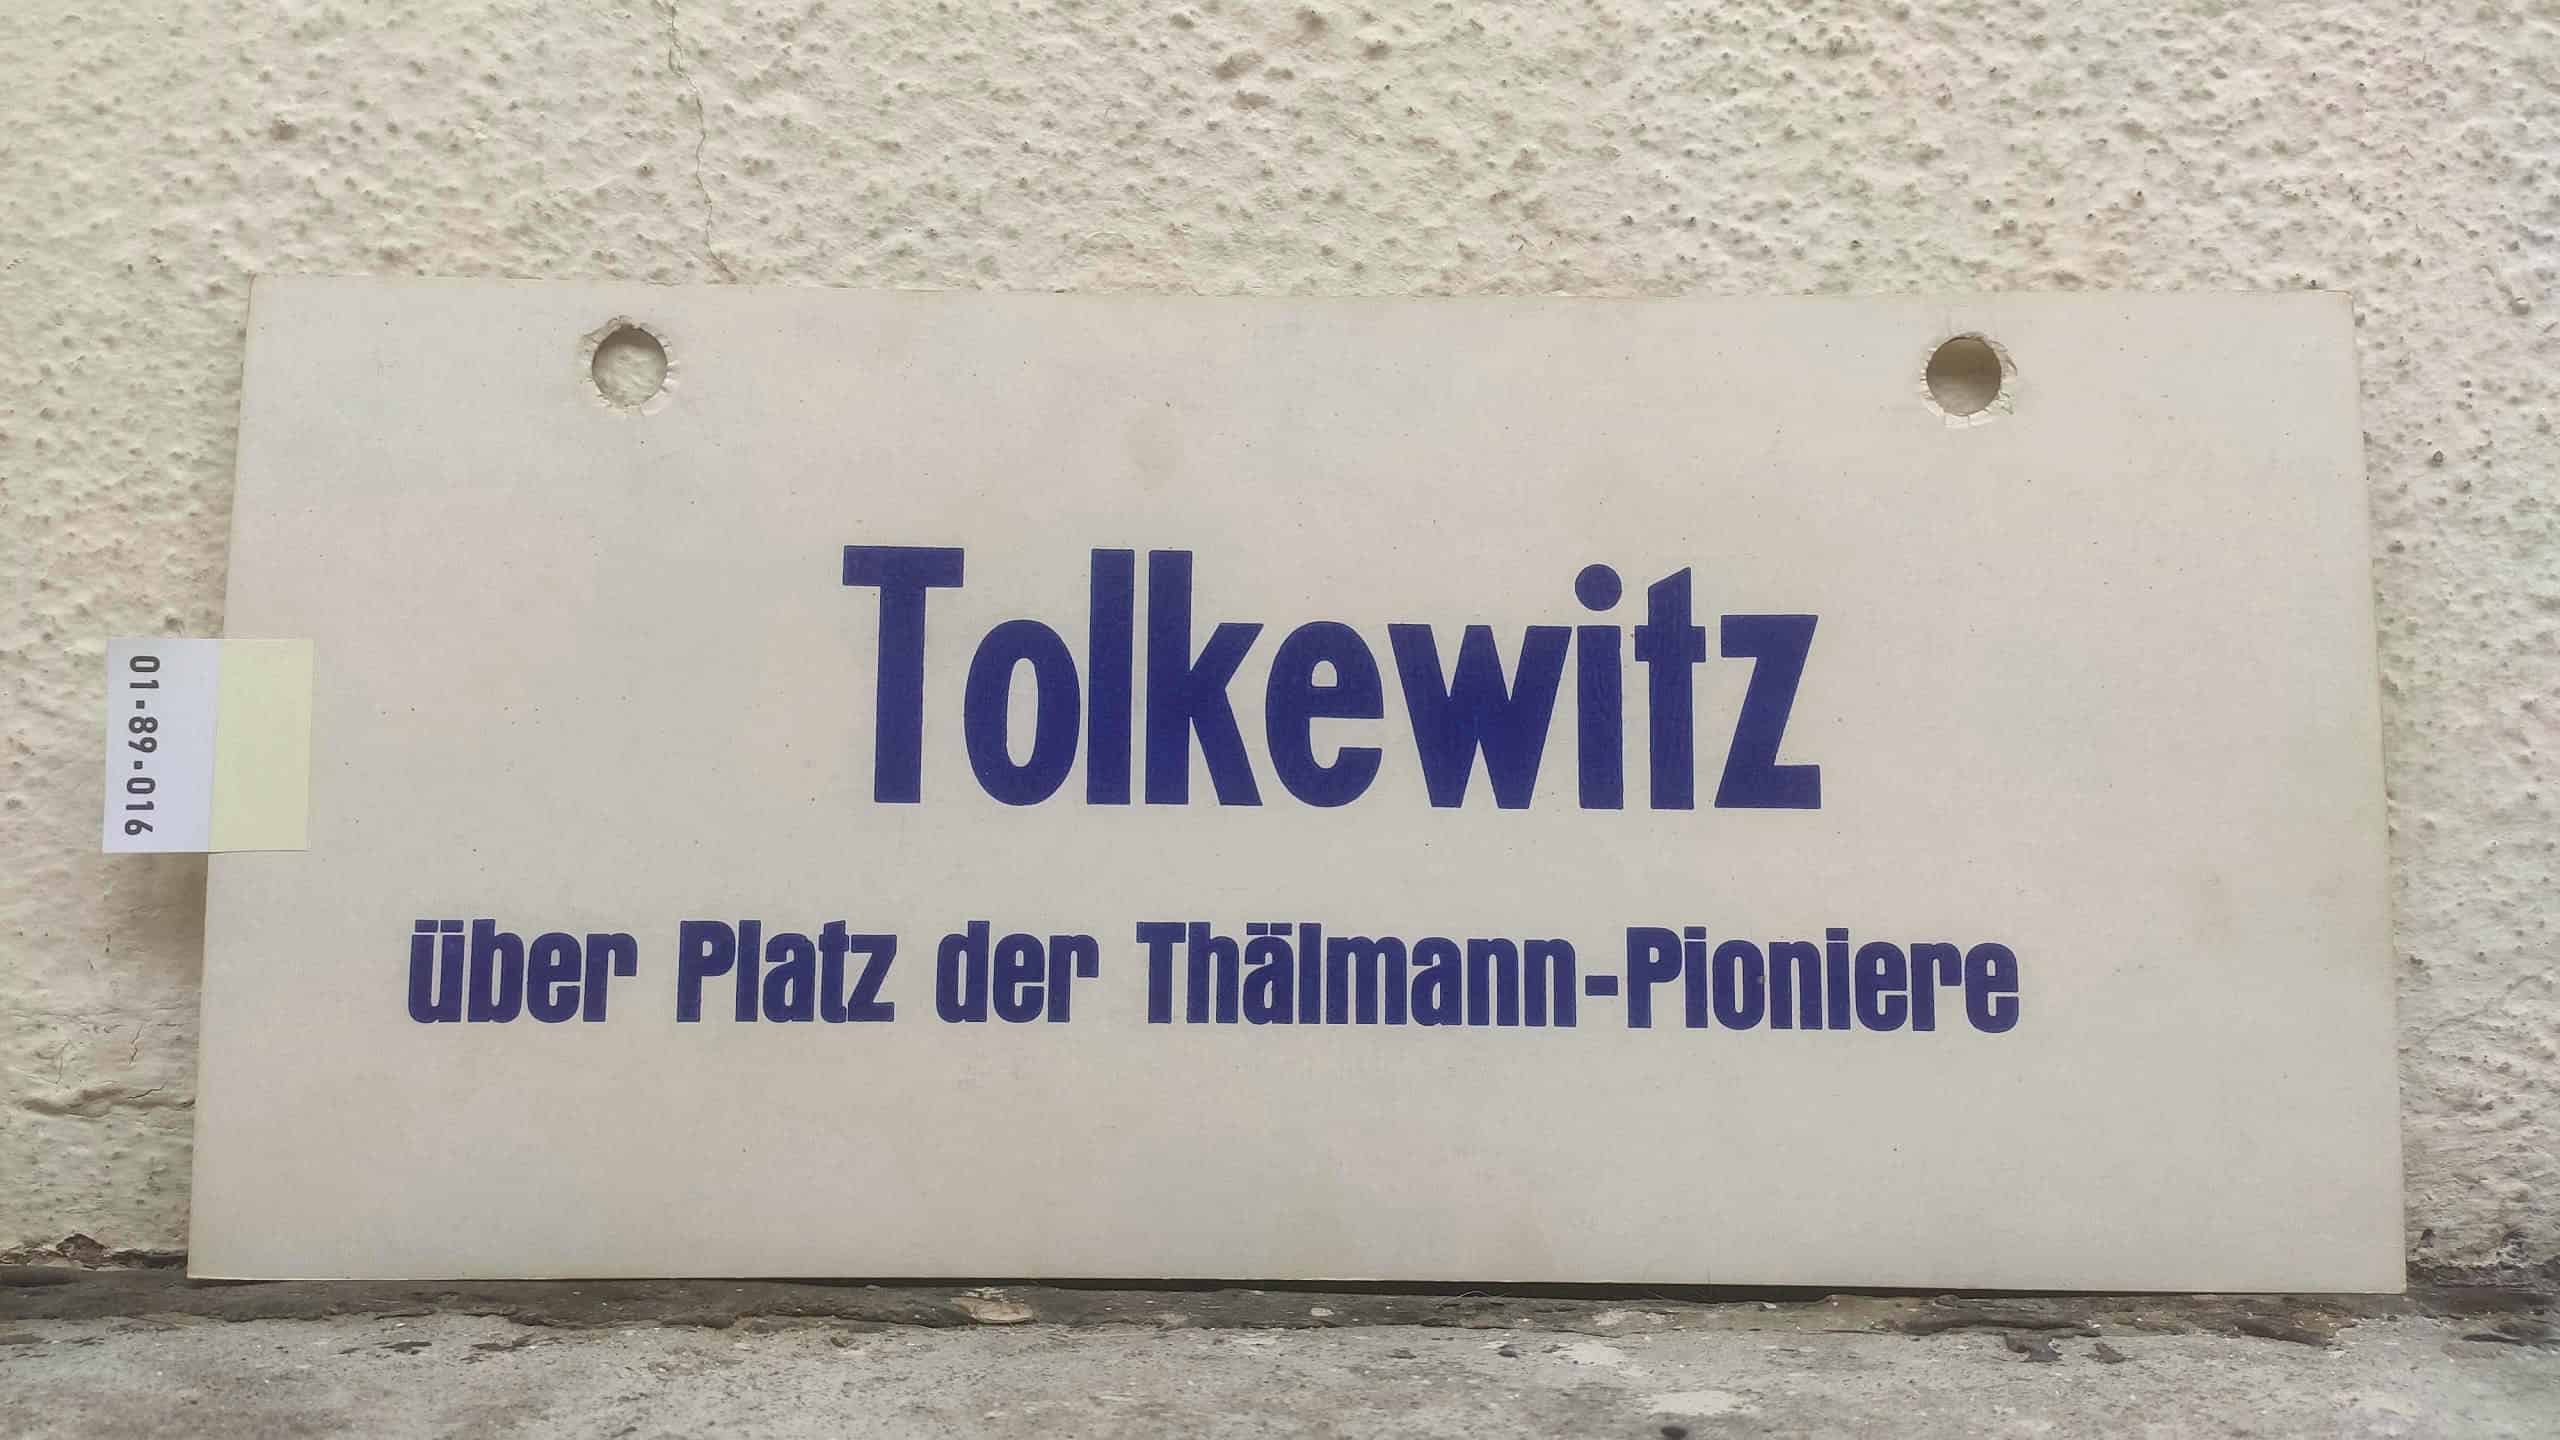 Tolkewitz über Platz der Thälmann-Pioniere